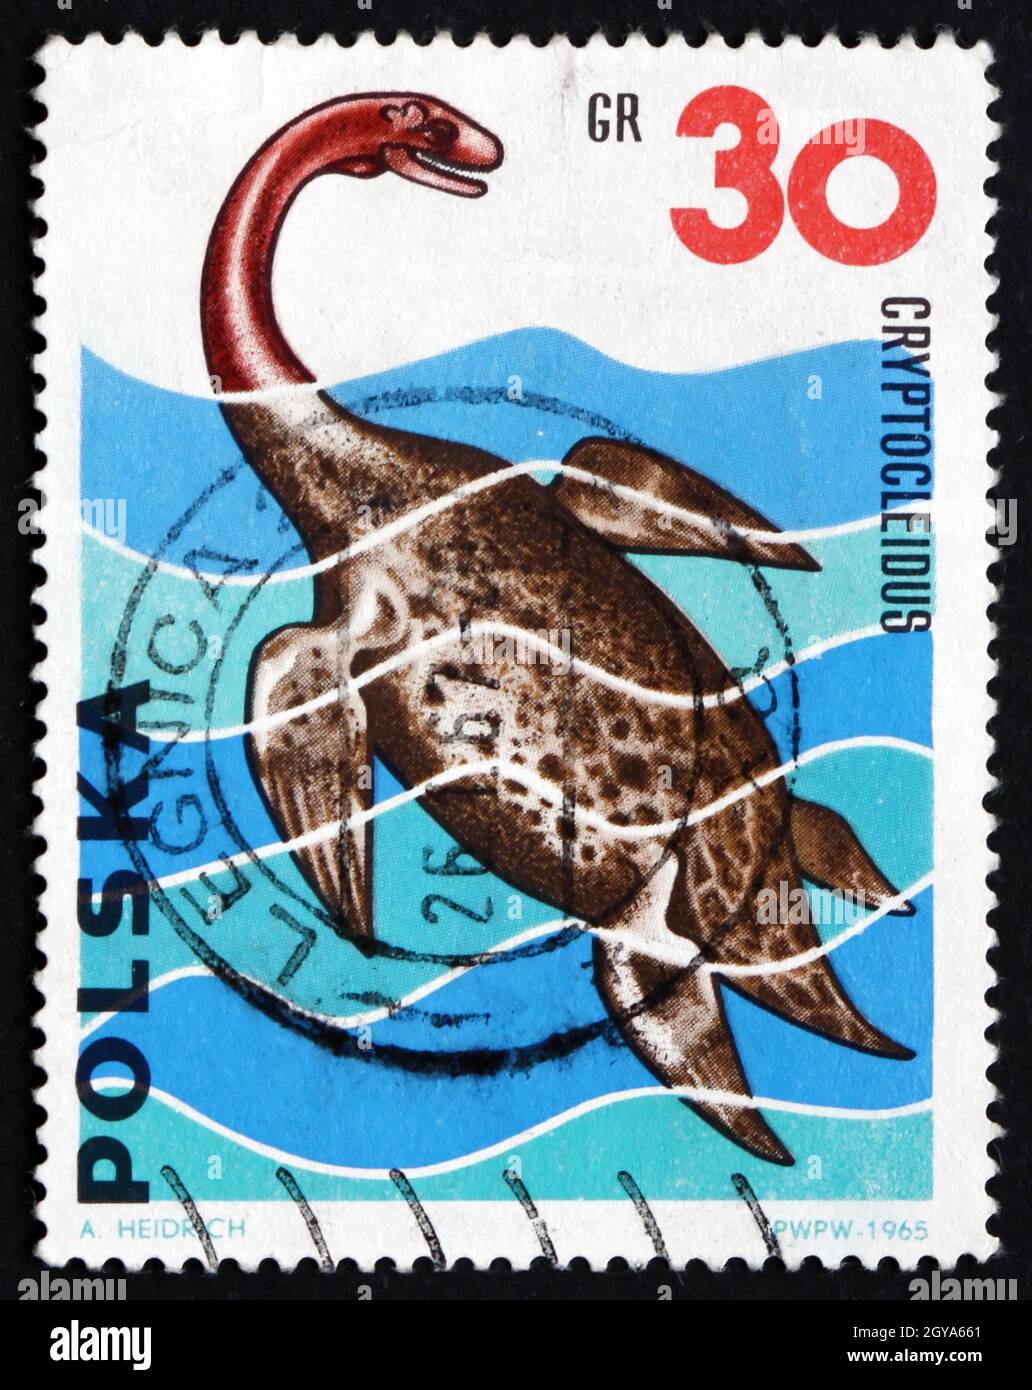 POLONIA - CIRCA 1965: Un sello impreso en Polonia muestra Cryptocleidus, fue un género de Plesiosaurio del período Jurásico Medio, Dinosaurio, alrededor de 1965 Foto de stock